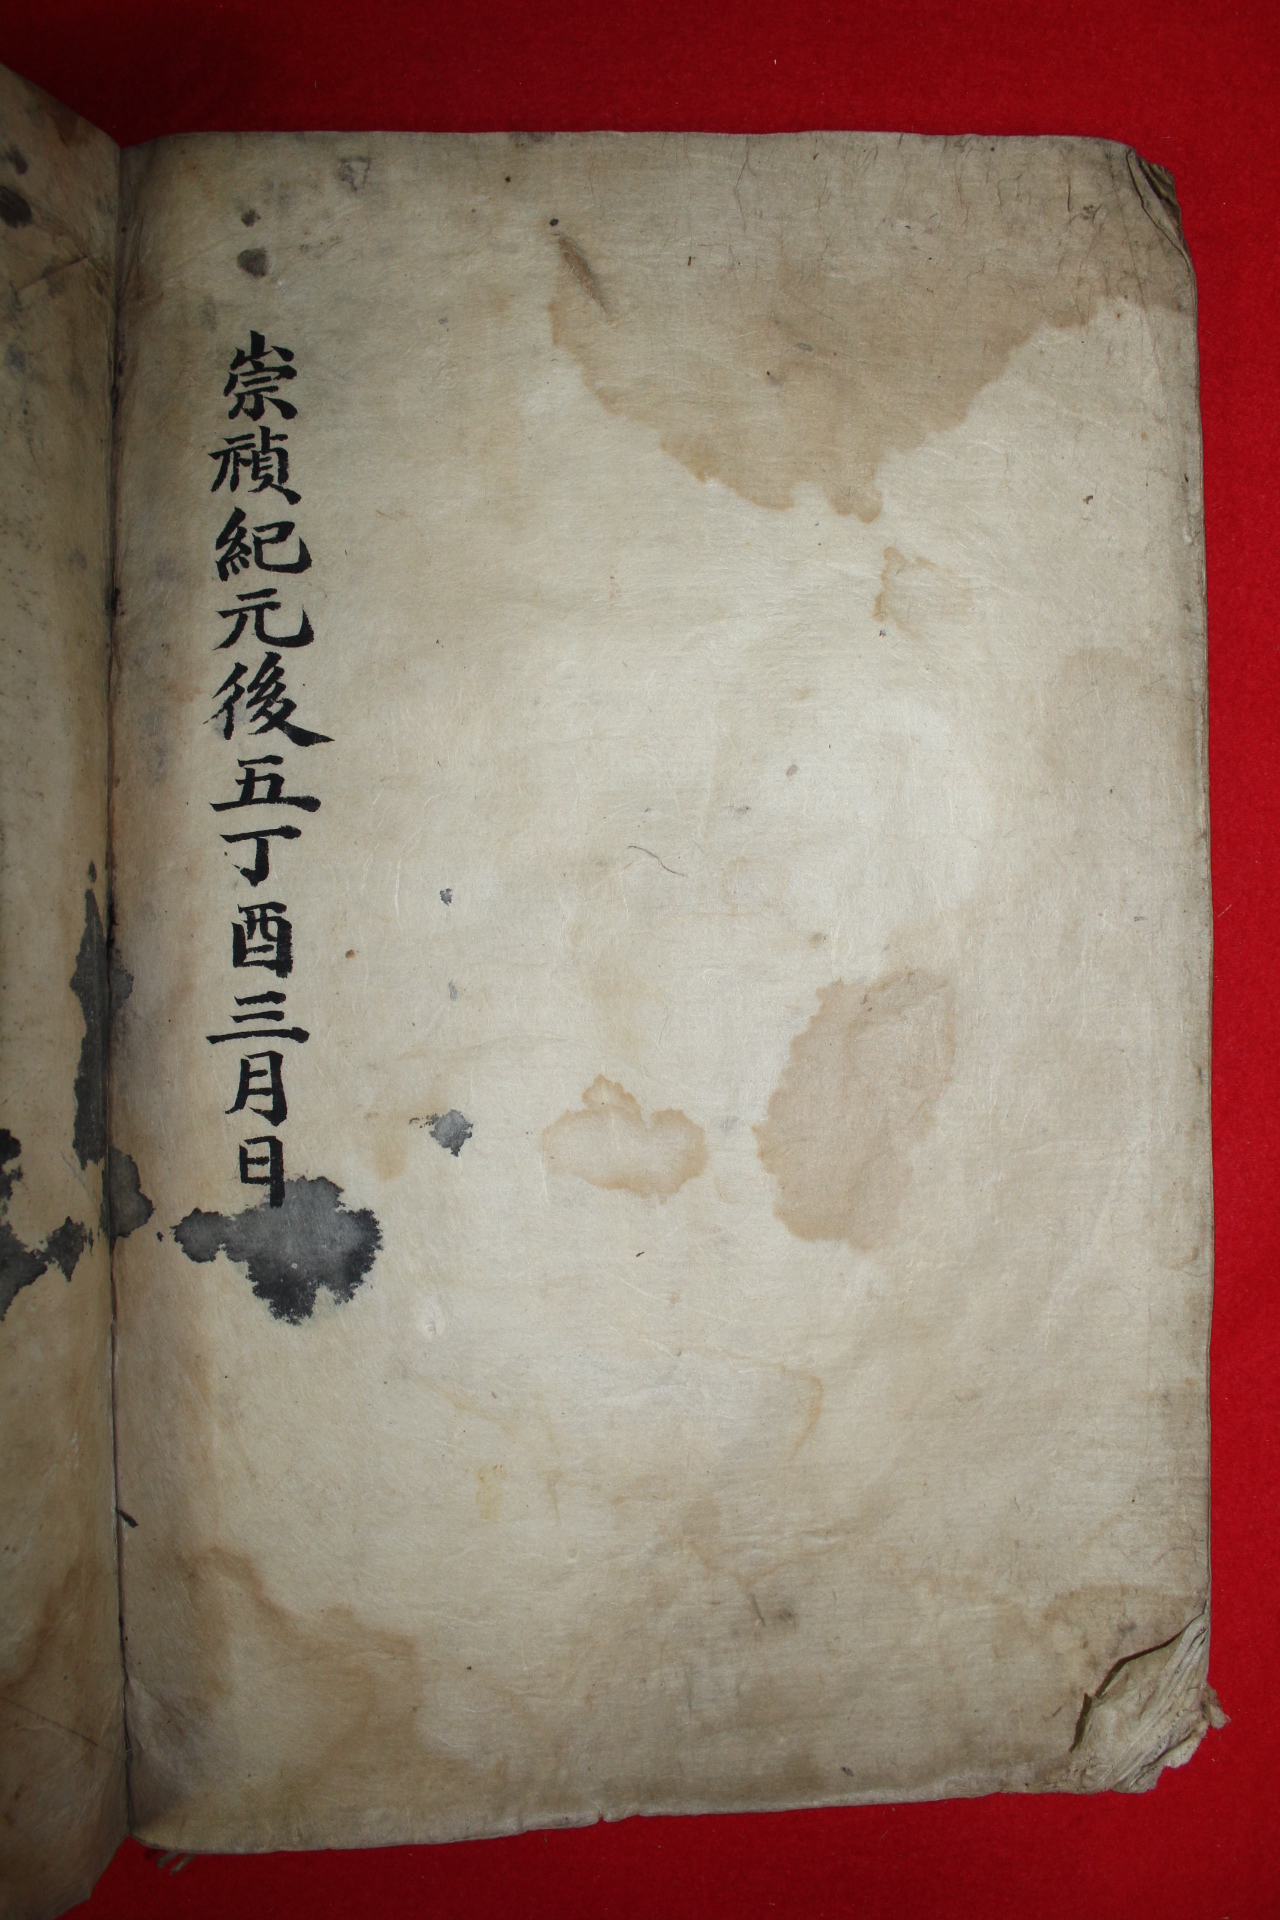 1897년 필사본 영해신씨세보(寧海申氏世譜) 1책완질